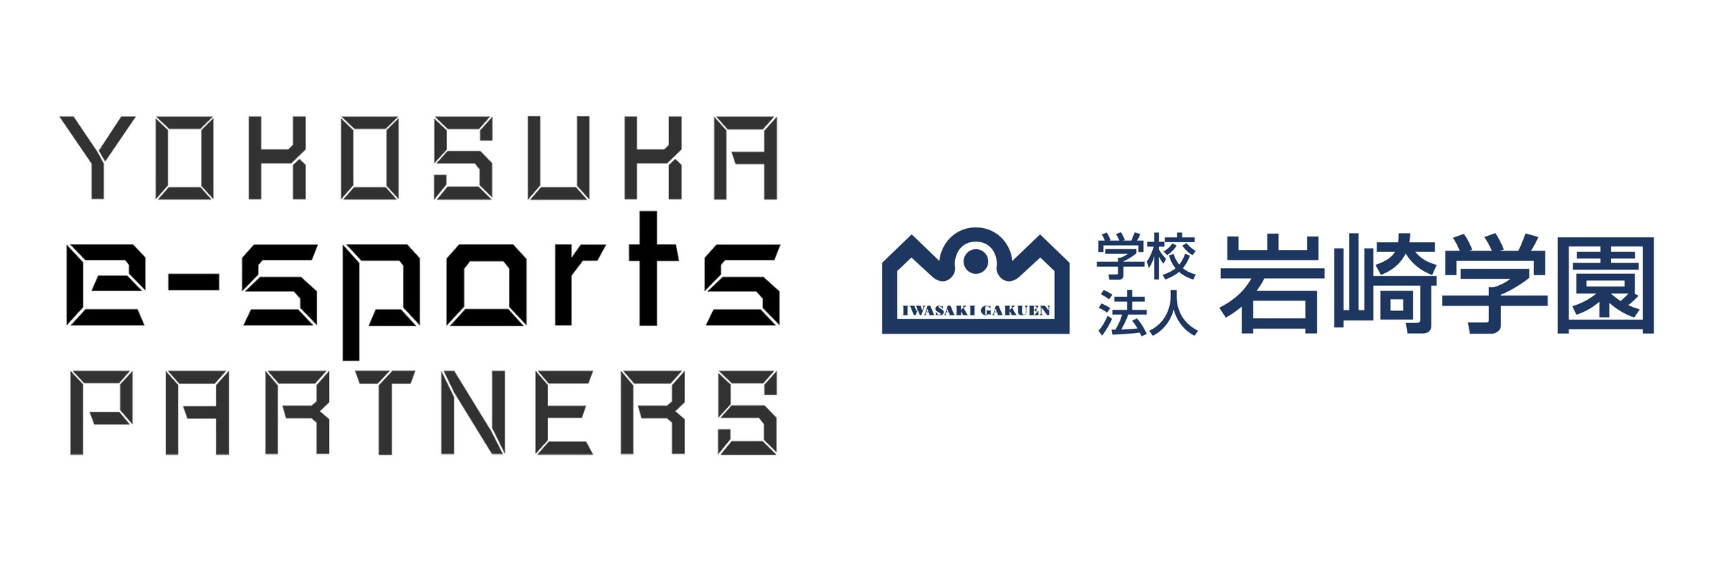 【横須賀をeスポーツの聖地に】岩崎学園が「Yokosuka e-Sports Partners制度」に参画